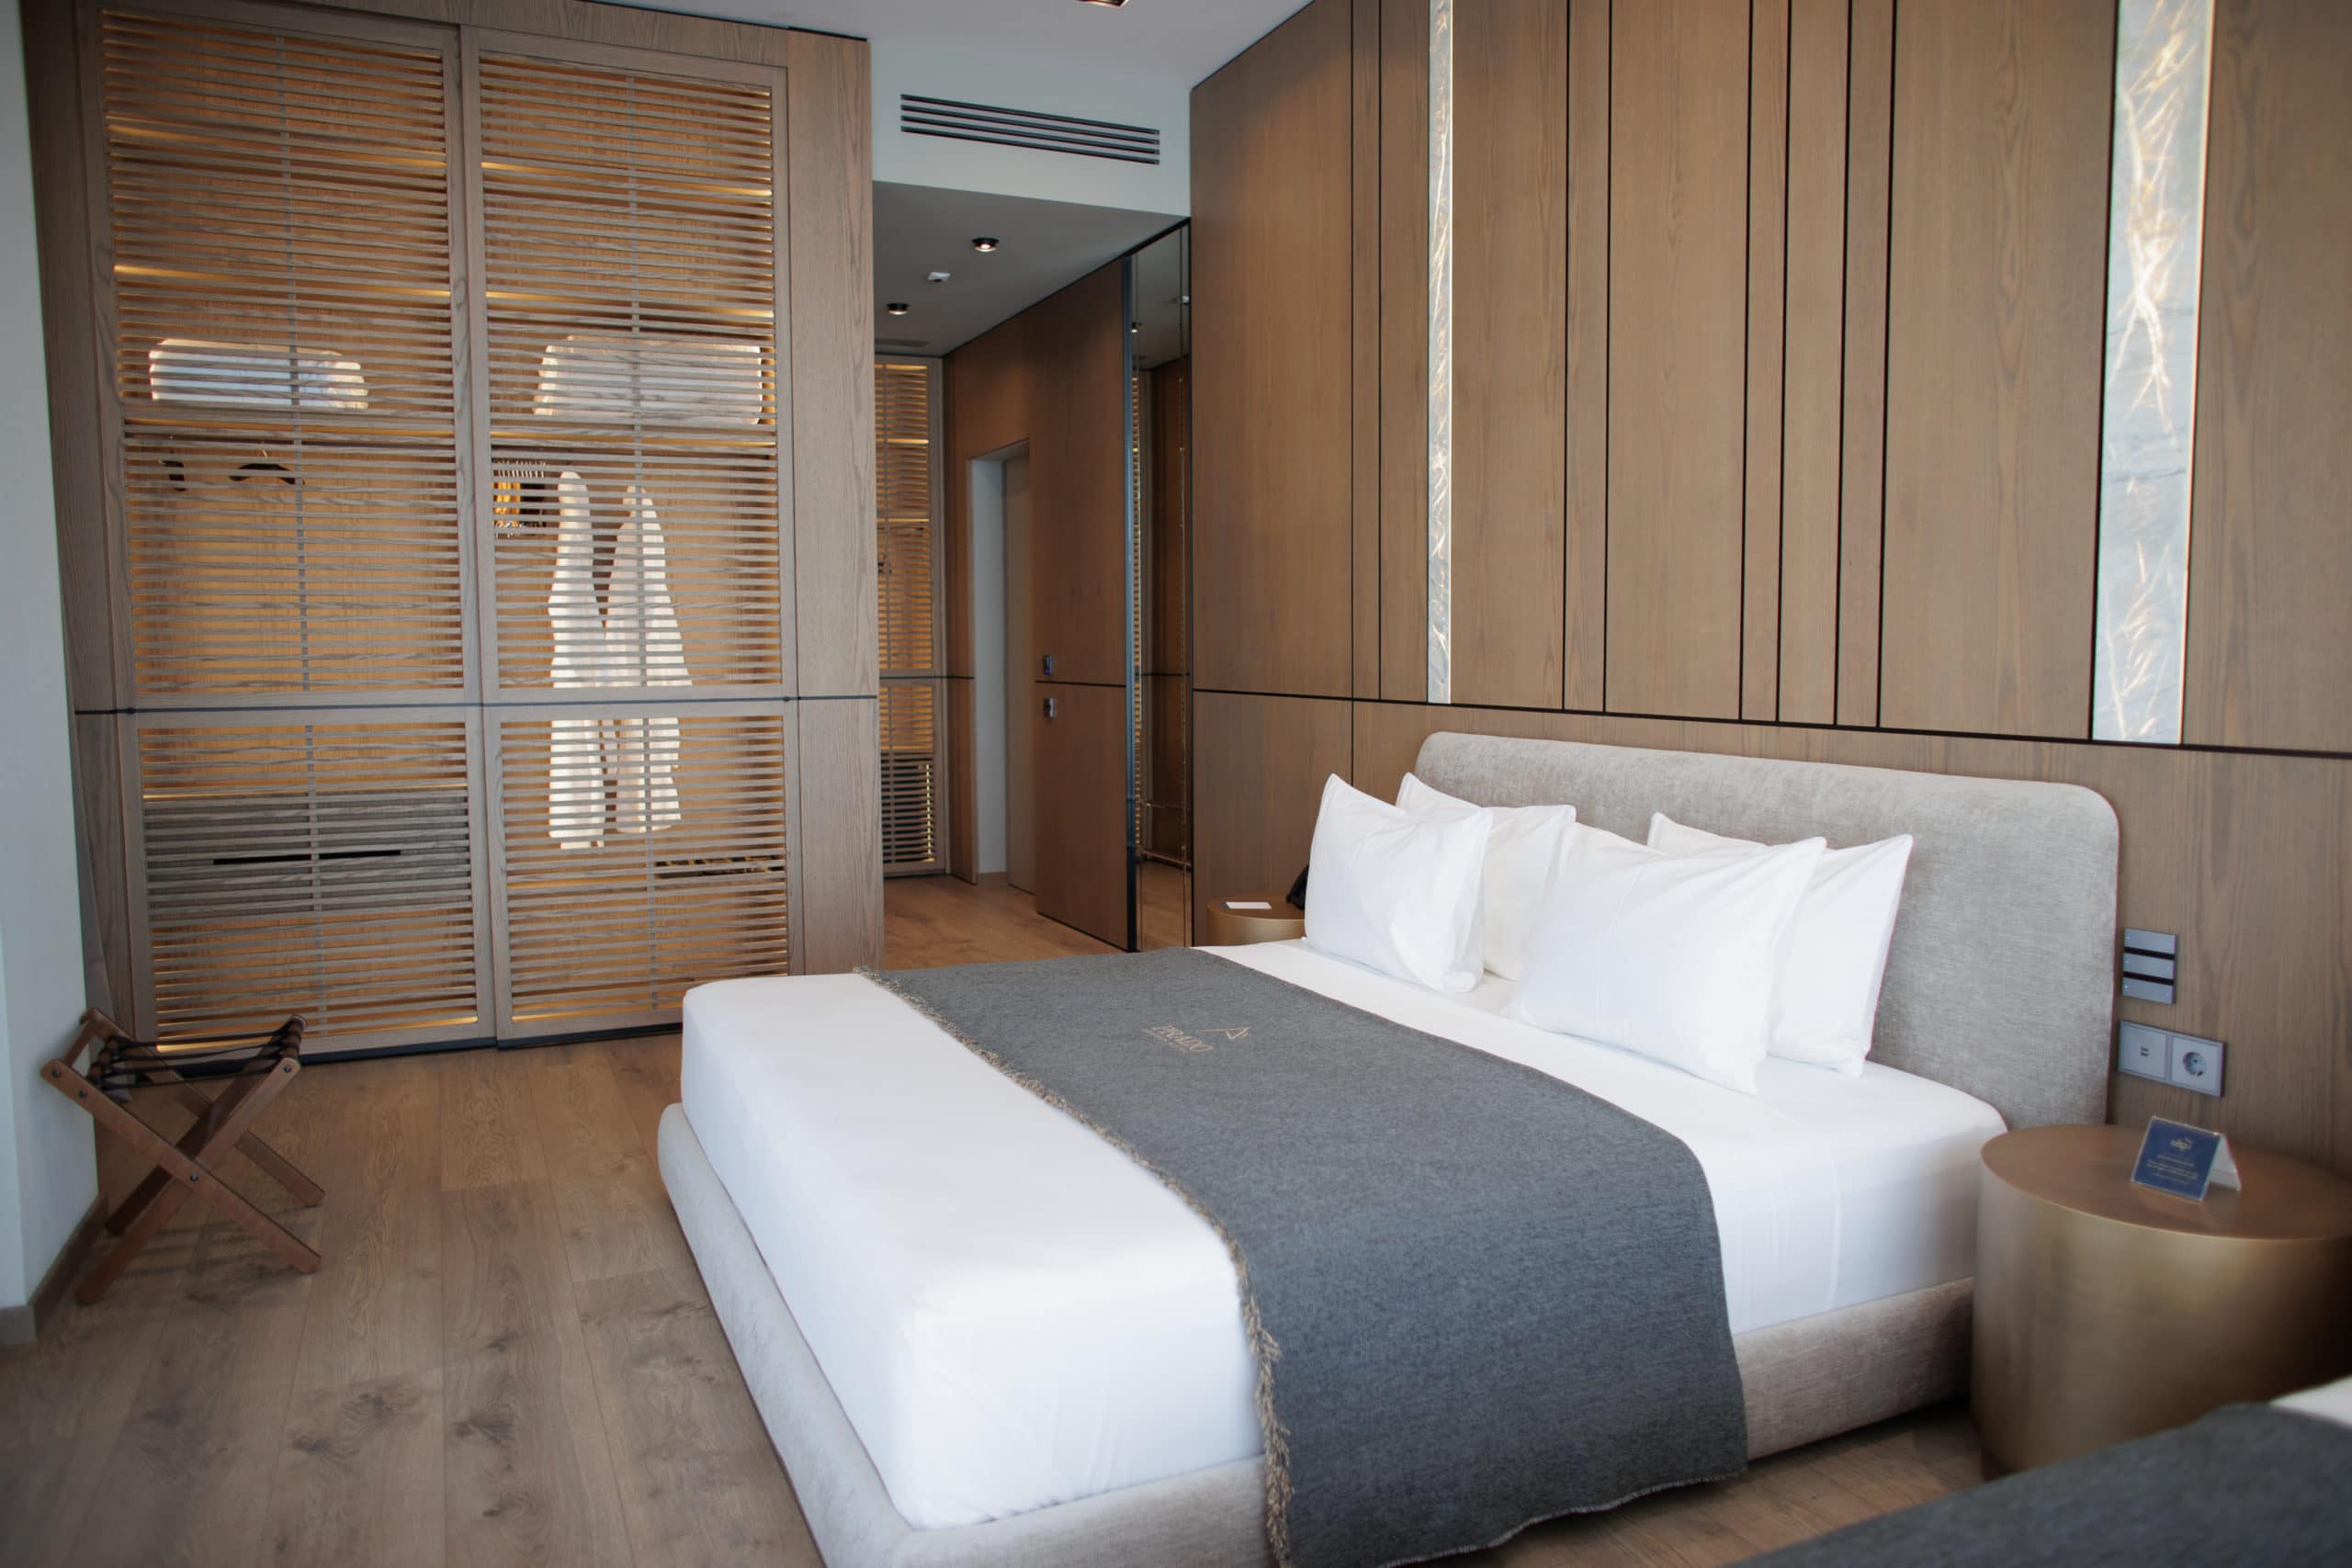 prado_luxury_hotel_junior_suite_bed_closet_view_full